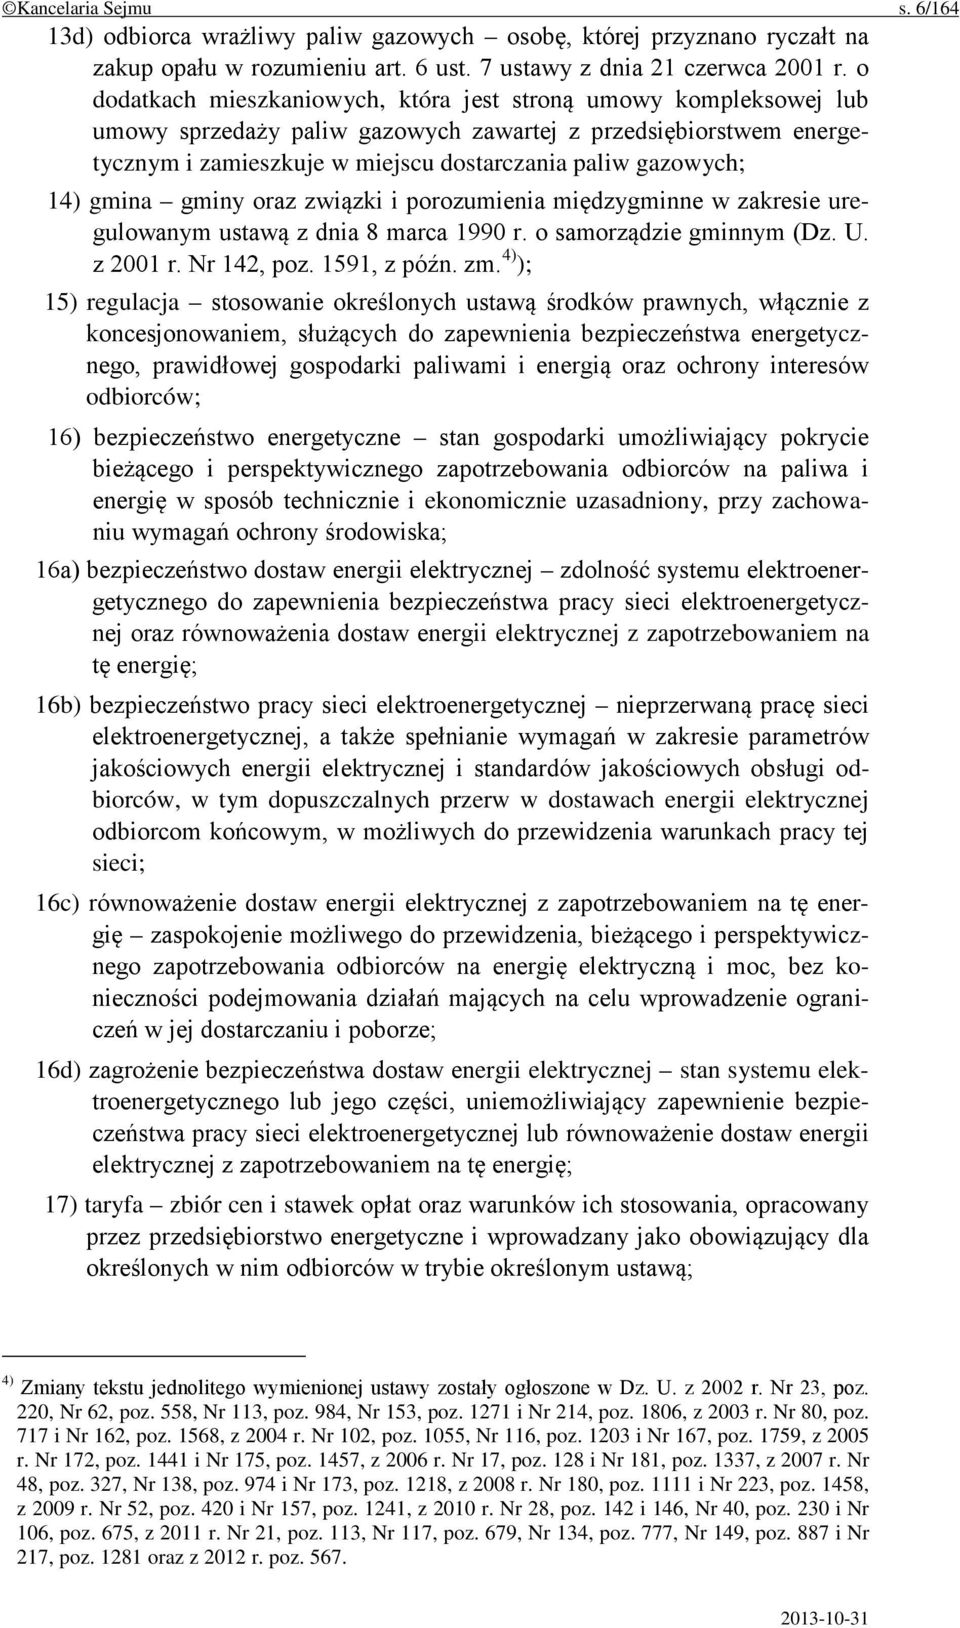 gmina gminy oraz związki i porozumienia międzygminne w zakresie uregulowanym ustawą z dnia 8 marca 1990 r. o samorządzie gminnym (Dz. U. z 2001 r. Nr 142, poz. 1591, z późn. zm.